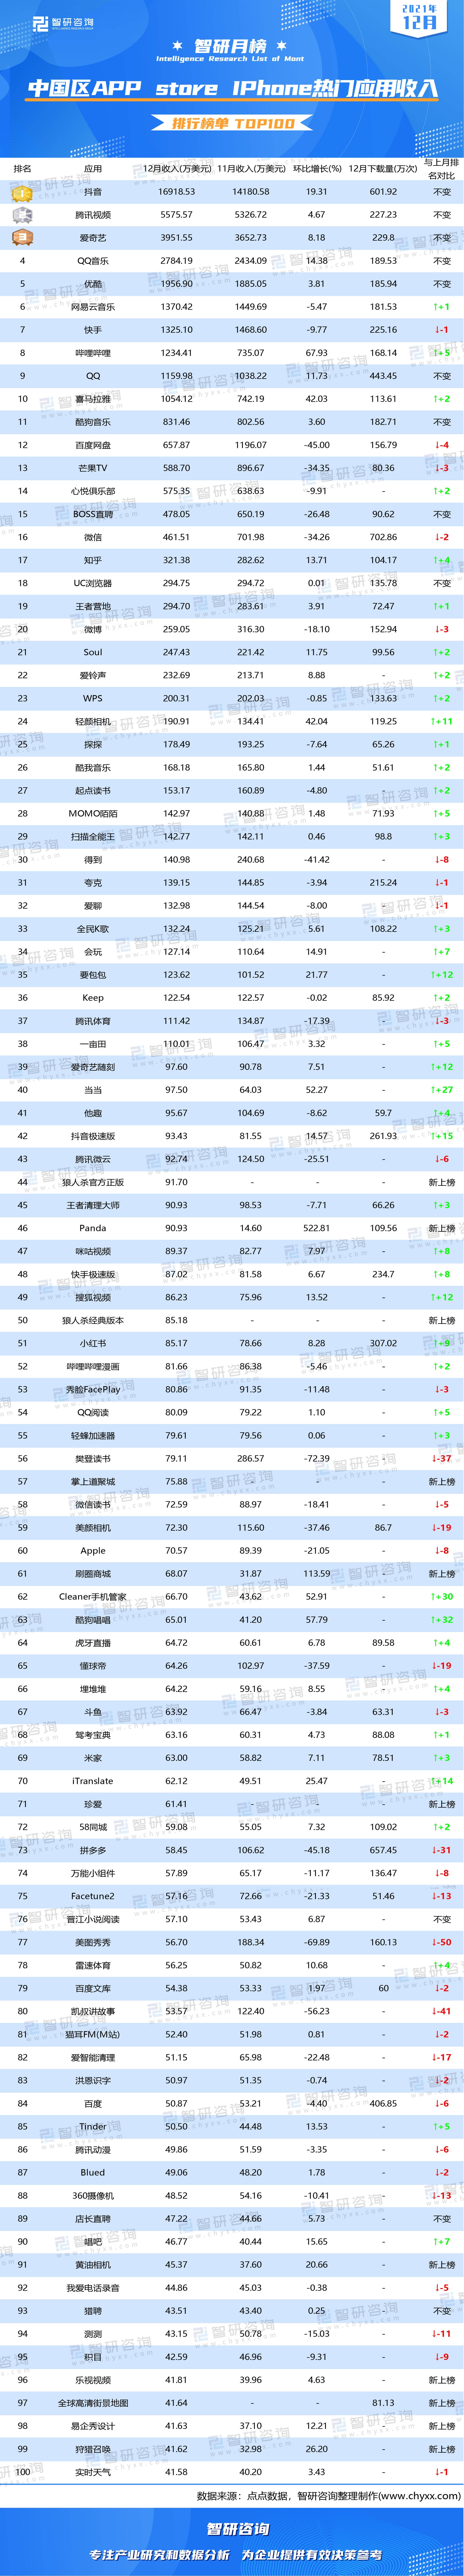 2021中国app排行榜_2021年12月中国区APPstoreiPhone热门应用收入排行榜:Top前五排...